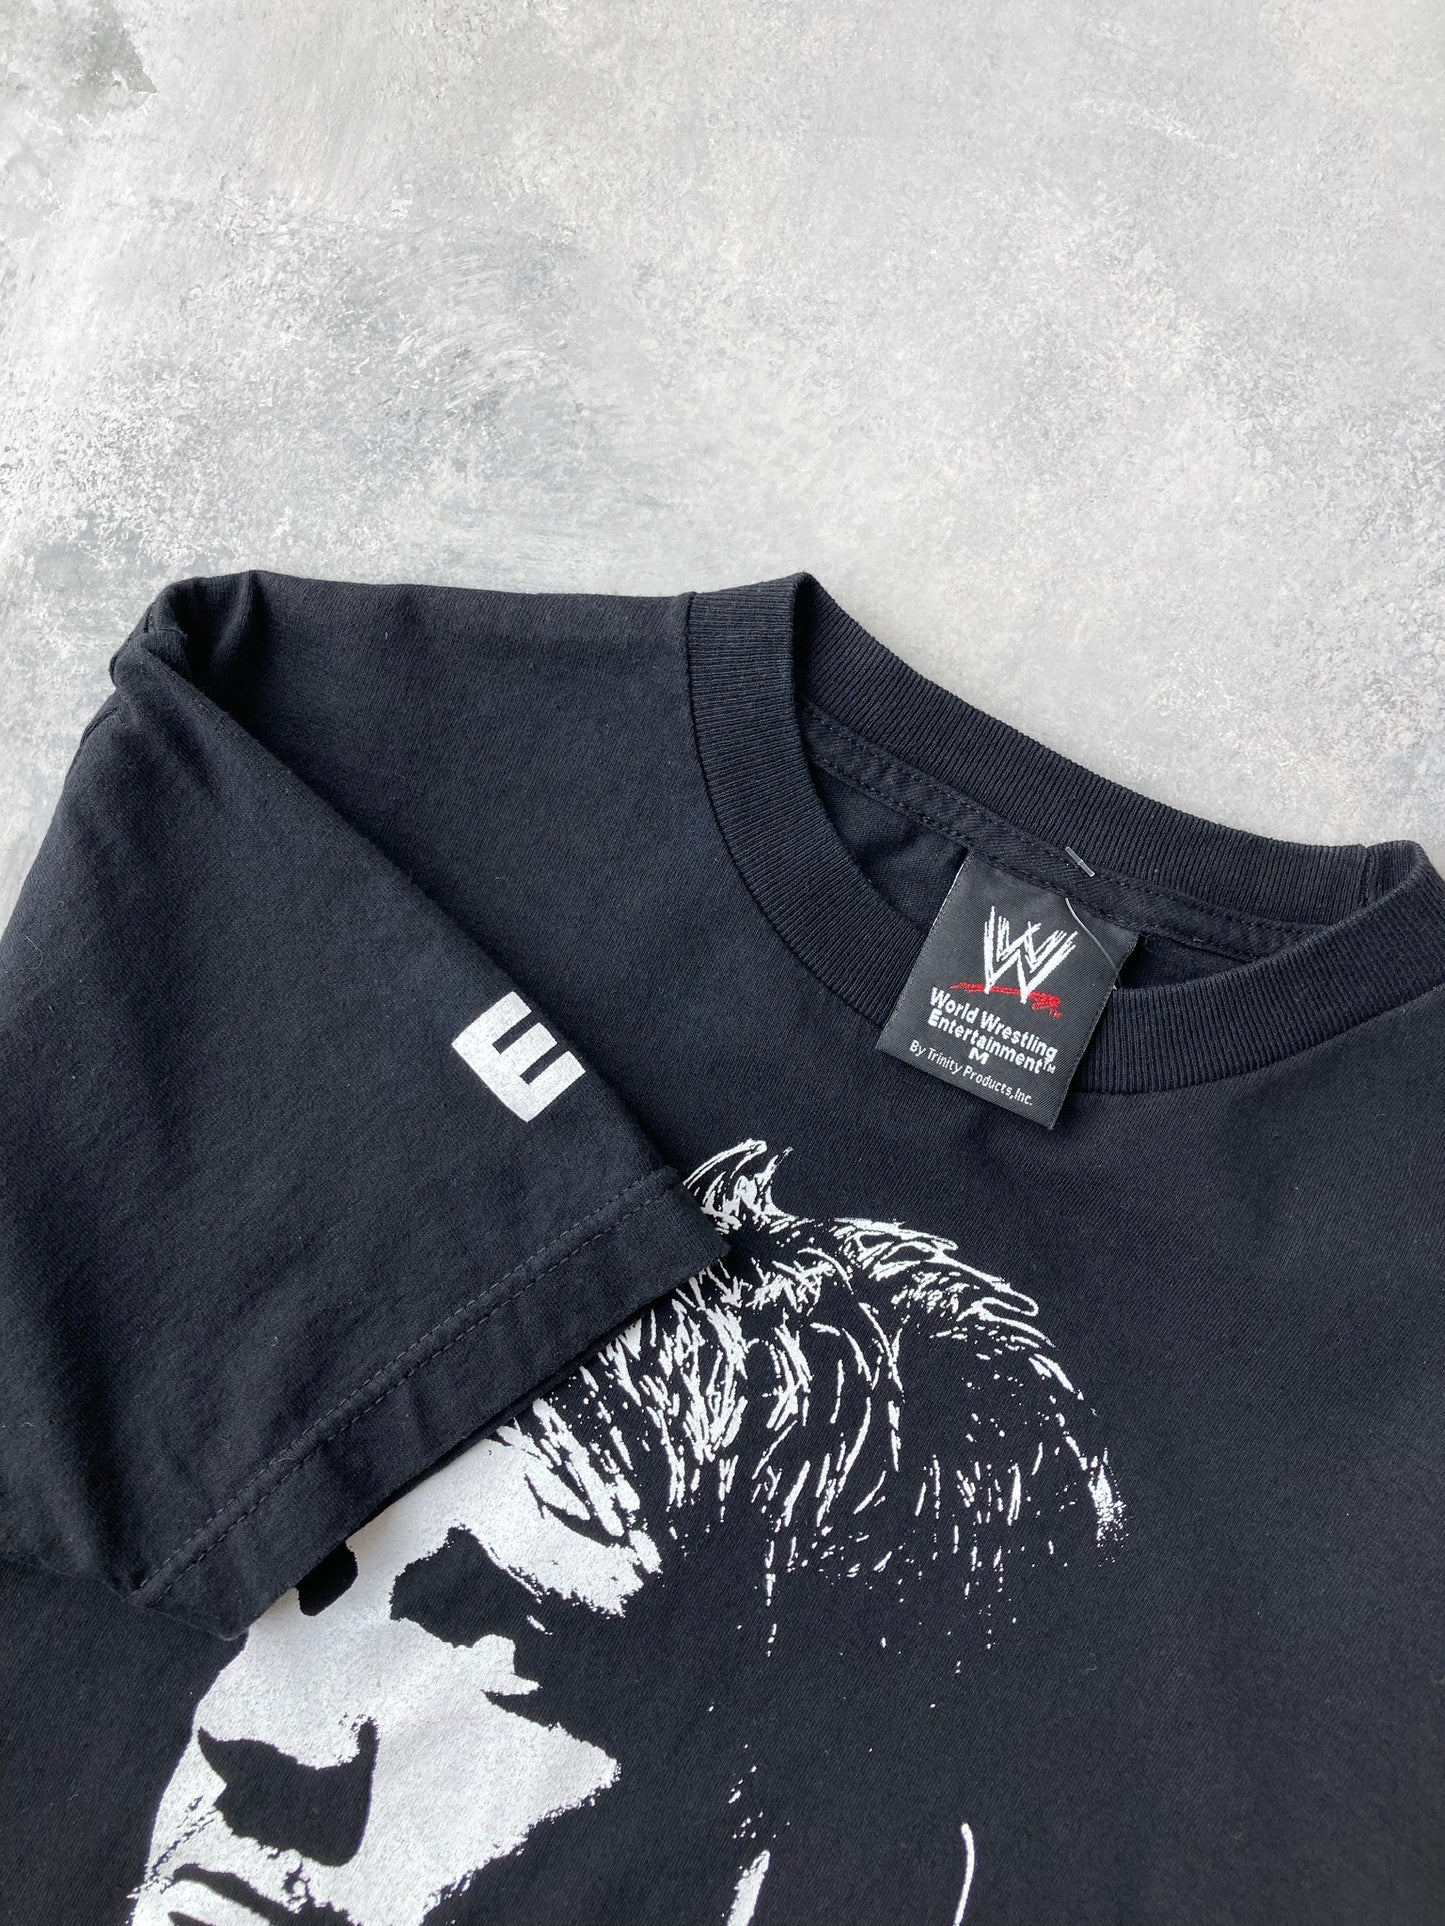 Eddie Guerrero Memorial T-Shirt '05 - Medium